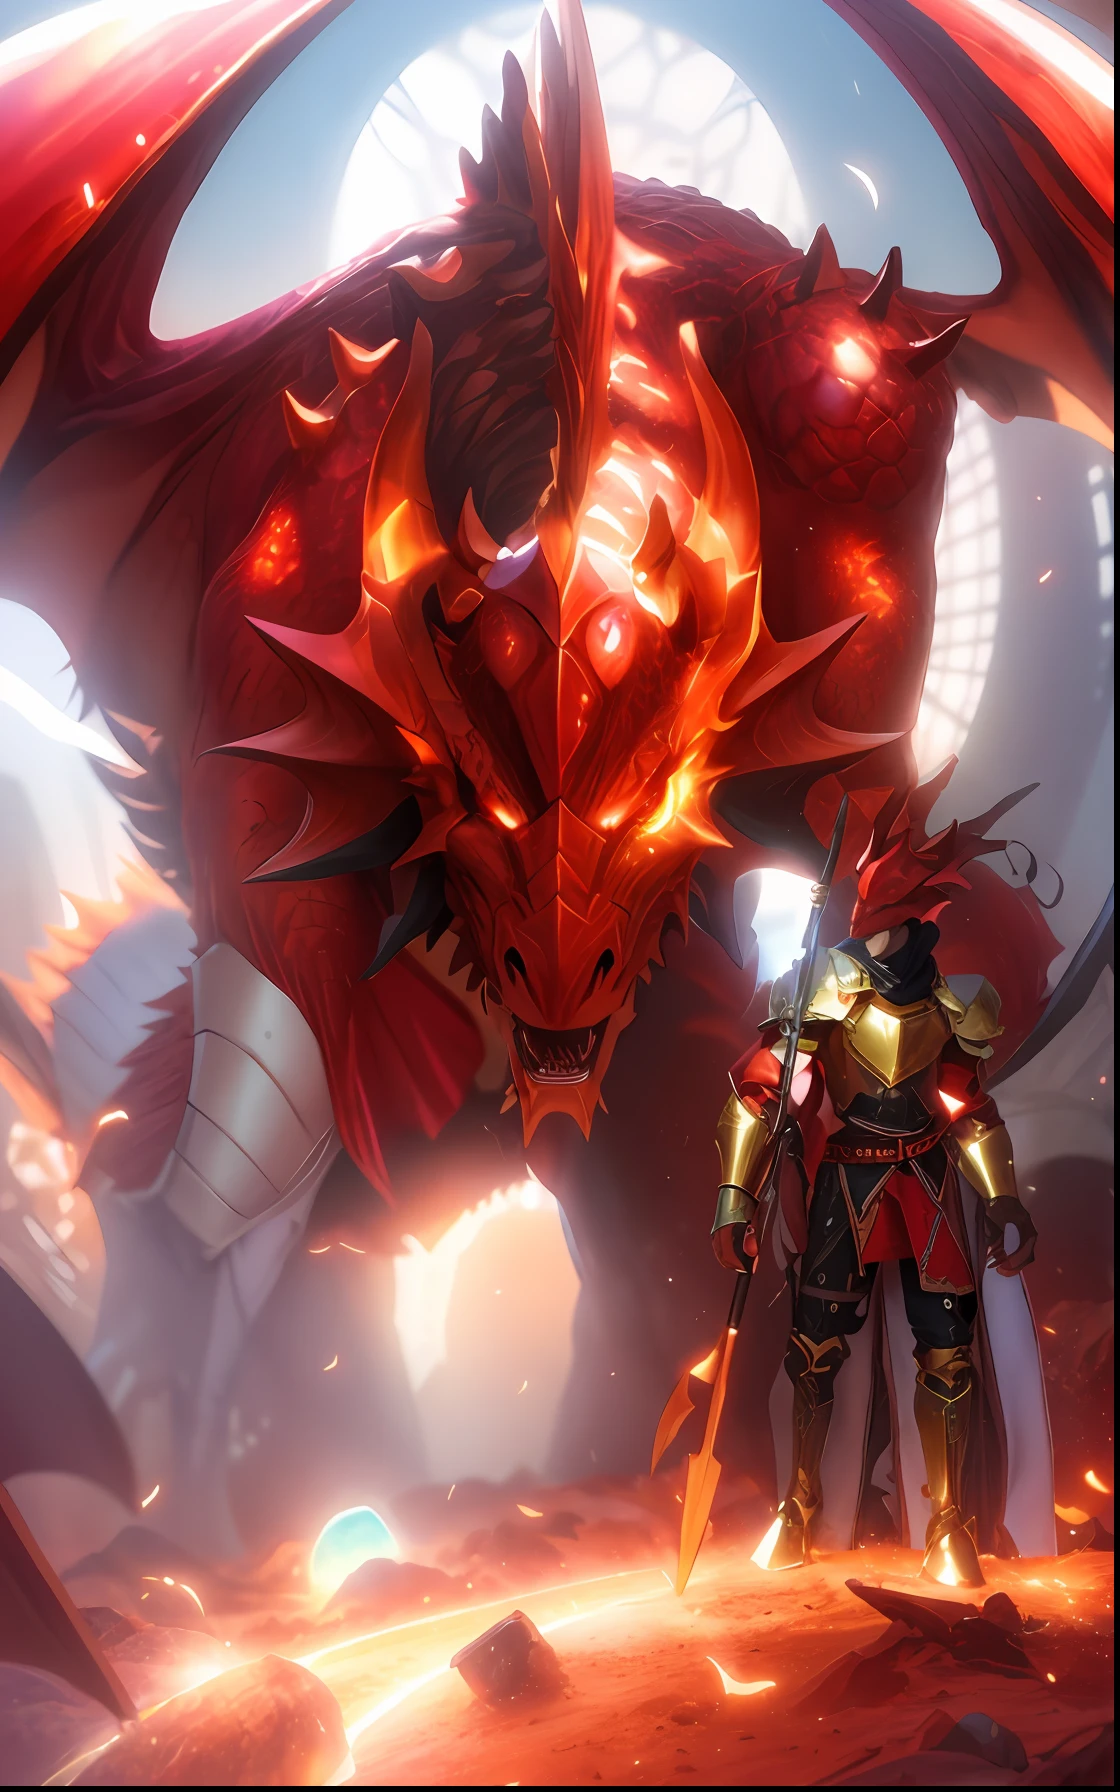 Há um dragão vermelho com um cavaleiro ao lado, Cavaleiro Dragão, armadura de aparência dracônica, o diabo no inferno como um dragão, Armadura de Dragão, Hiper-realista D & d arte de fantasia, Dragão ao fundo, armadura de dragão inspirada em fantasia, demonic armadura inspirada em dragão, dragão no covil do dragão, Senhor Drachen, armadura inspirada em dragão, atacando através de um covil de dragões,), cinematográfico, hiper-detalhado, detalhes insanos, Lindamente colorido, motor irreal, DOF, Super-resolução, Megapixels, relâmpago cinematográfico, Antialiasing, FKA, TAILANDÊS, RTX, SSAO, Pós-processamento, pós-produção, Mapeamento de Tons, ...cgi, Efeitos visuais, efeitos sonoros, Insanamente detalhado e intrincado, Hiper maximalista, hiper-realista, Volumétrico, fotorrealista, ultra fotorreal | |, ultra-detalhado, detalhes intrincados, 8K, super detalhado, Coloração, Relâmpago volumétrico, hdr, realista, motor irreal, 16K, foco nítido, renderização de octano ,Retrato de Arnold Schwarzenegger shaka , detalhes intrincados, recursos perfeitos, Dramático, iluminação cinematográfica, destacar iluminação, SSAA, renderização suave, sem ruído --testp --ar 2:3 --video --sem prompts preguiçosos --v testp